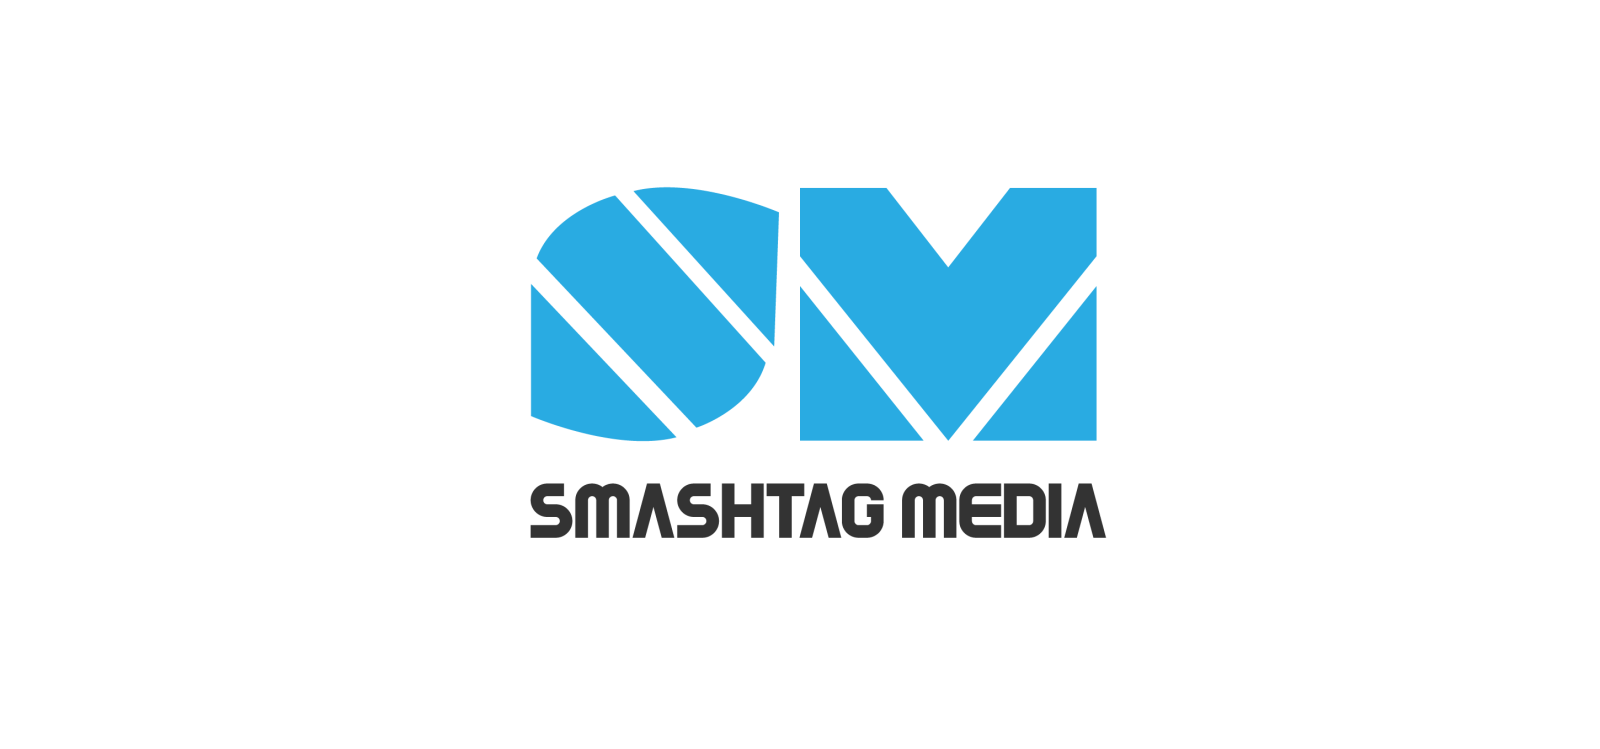 Smashtag Media